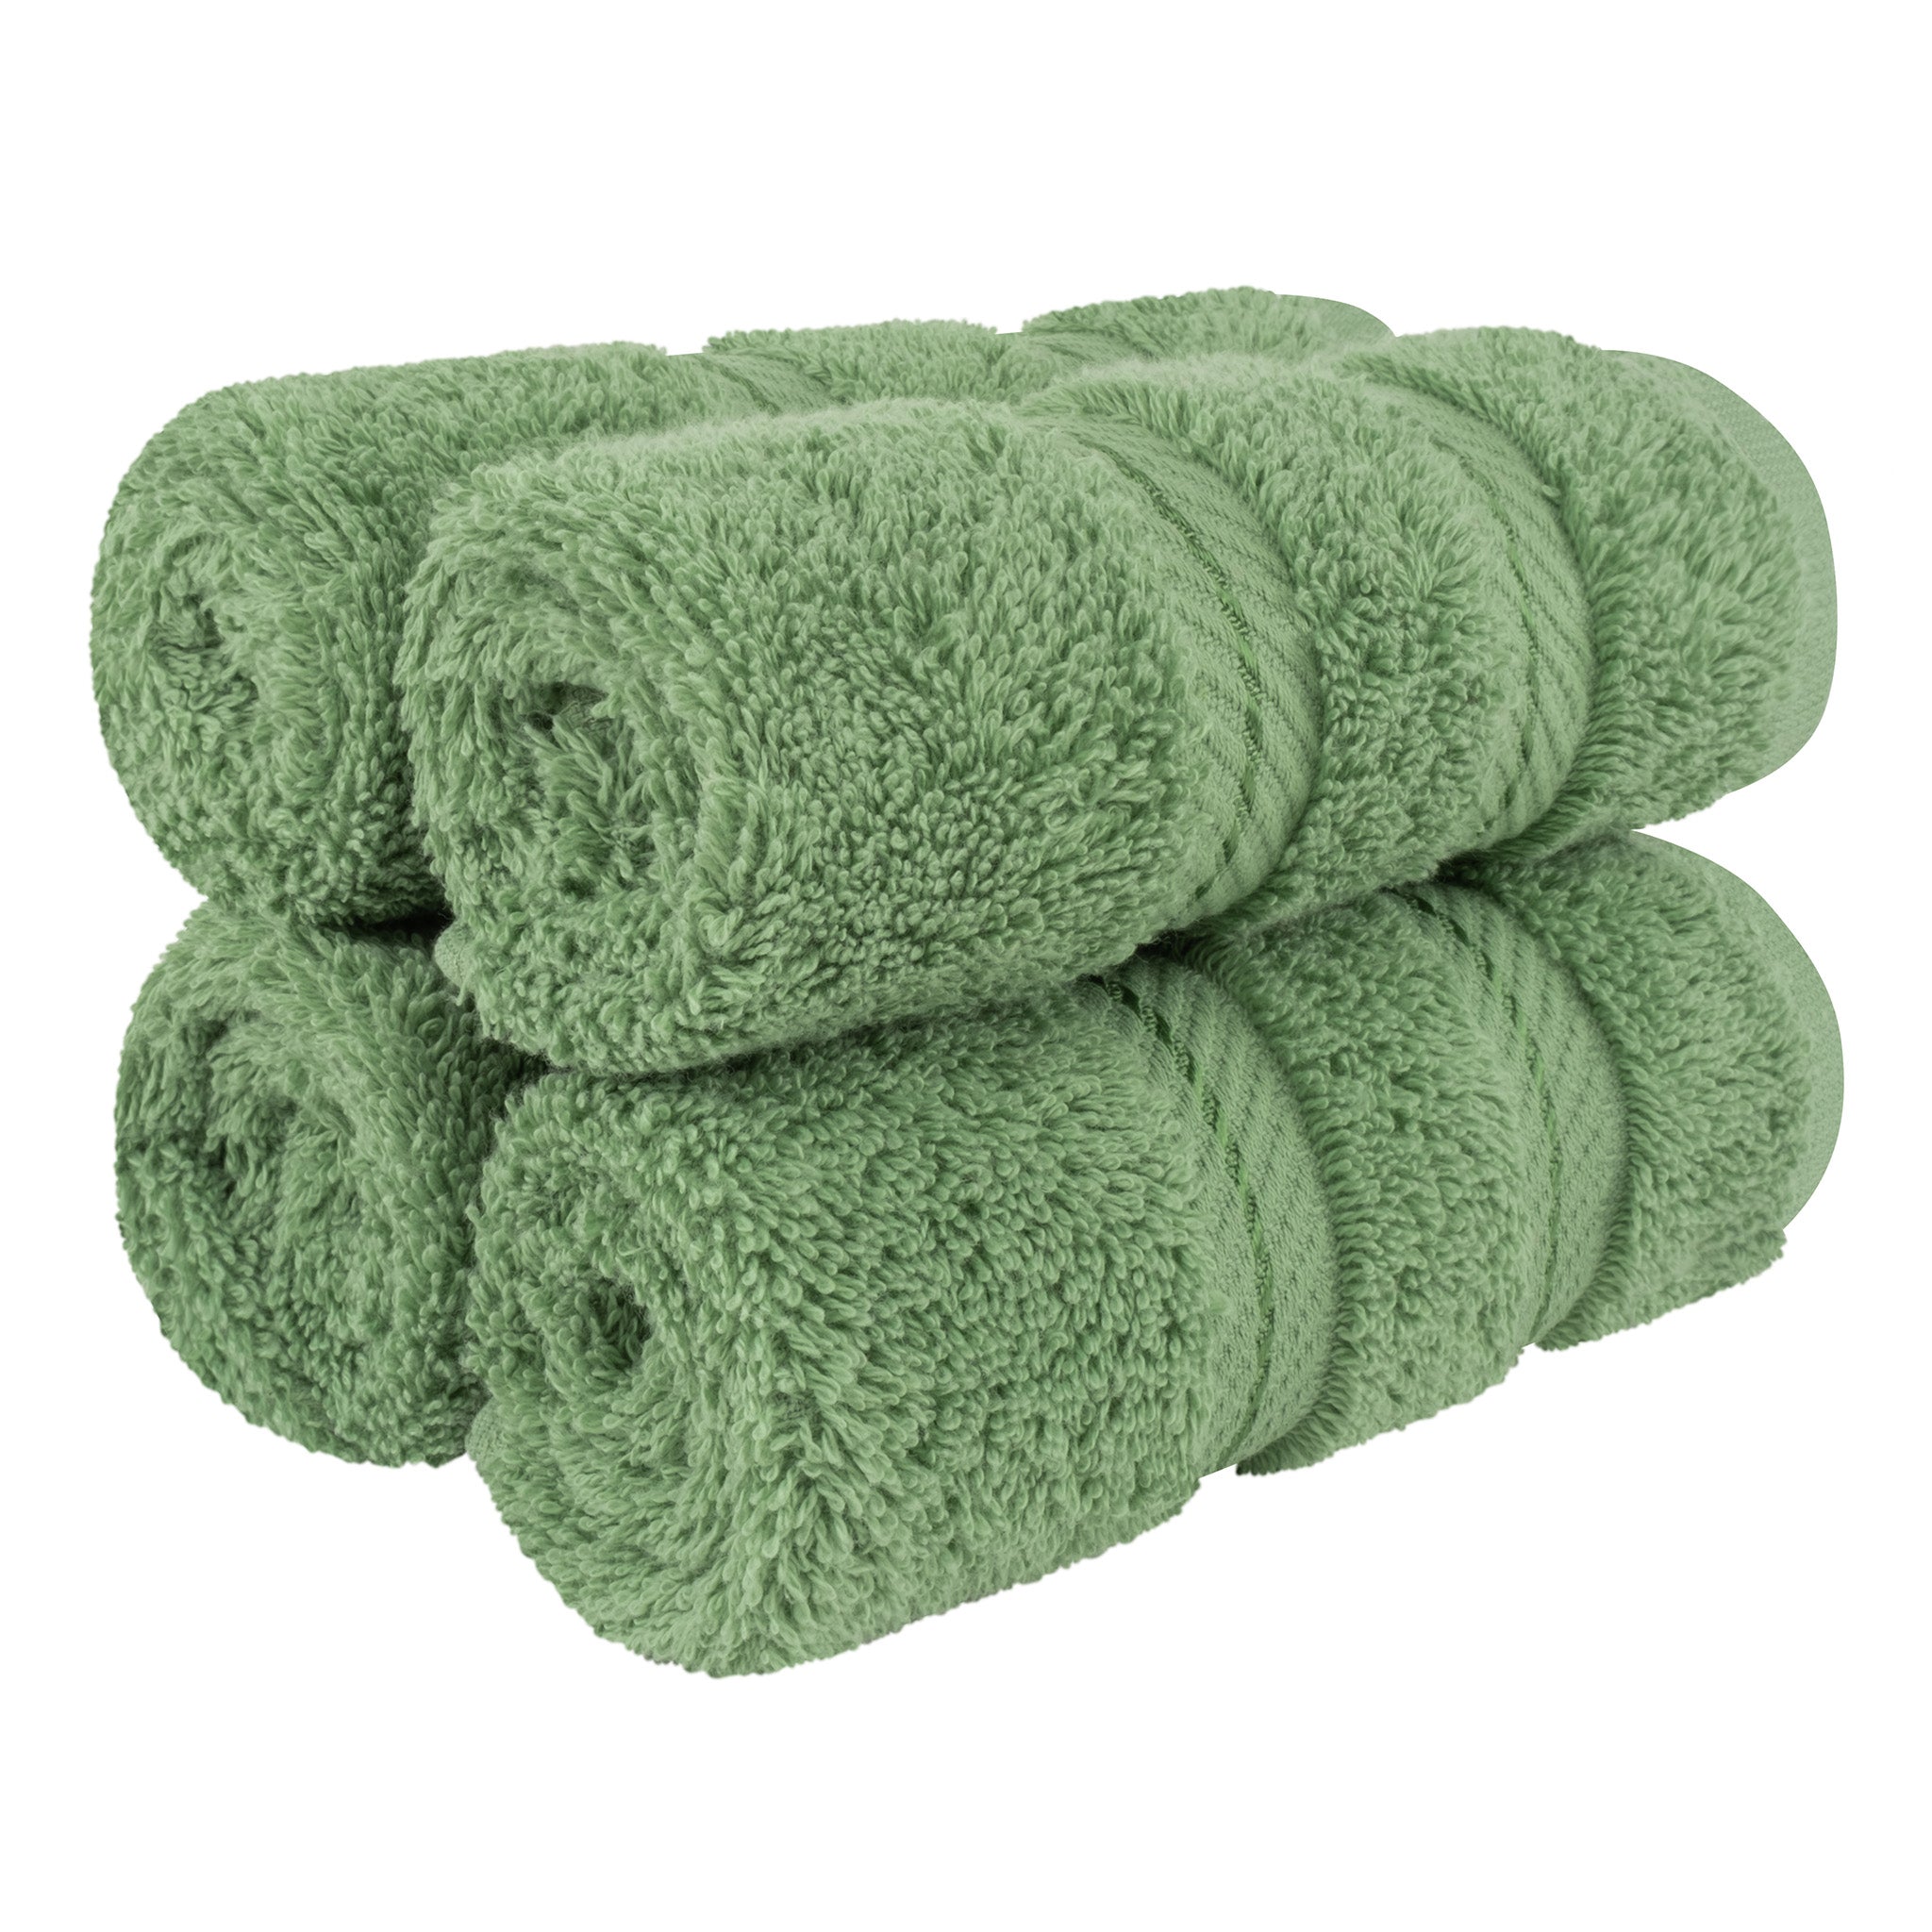 American Soft Linen 100% Turkish Cotton 4 Piece Washcloth Set sage-green-1